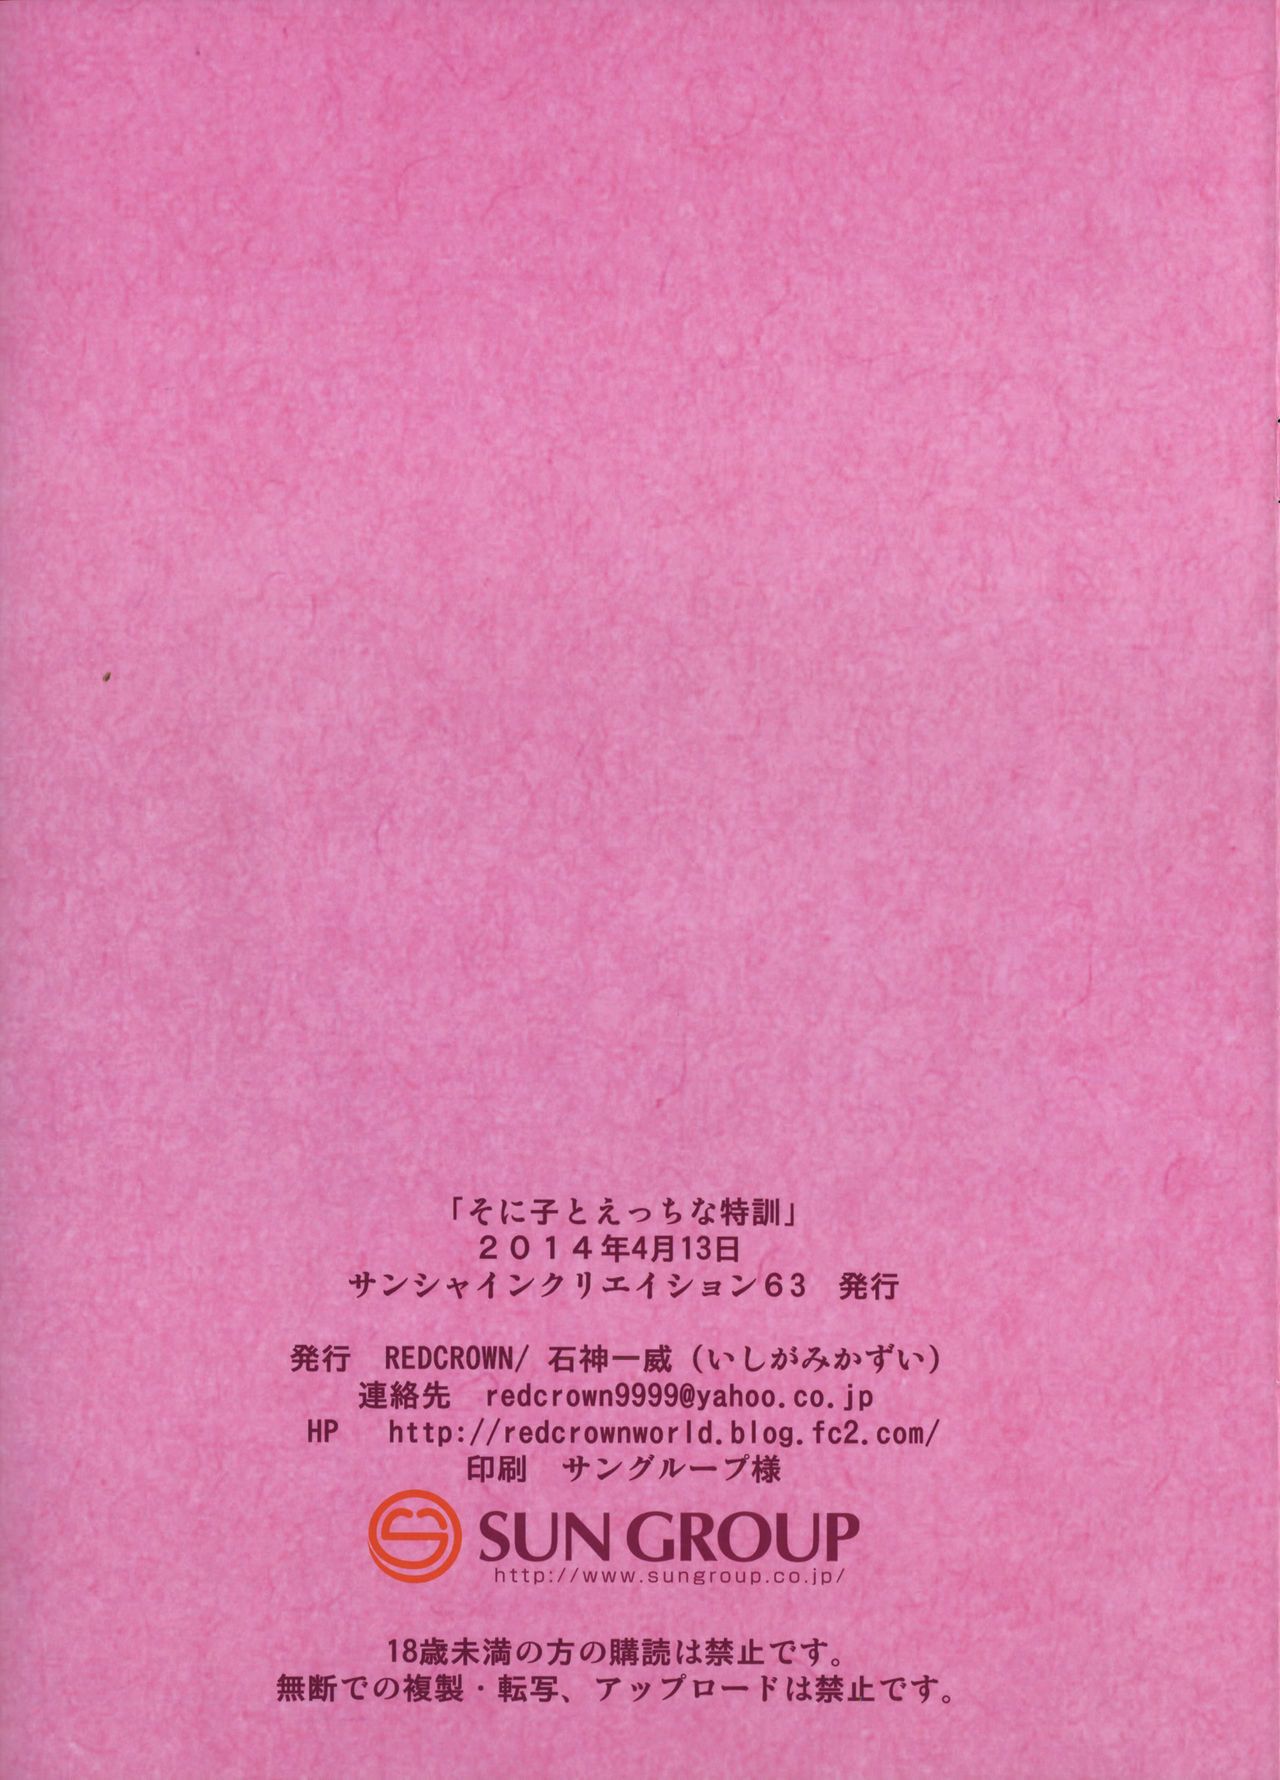 (sc63) czerwony korona (ishigami kazui) Strona sonico w Эччи na tokkun Nieprzyzwoite Szkolenia z Strona sonico (super sonico) biribiri